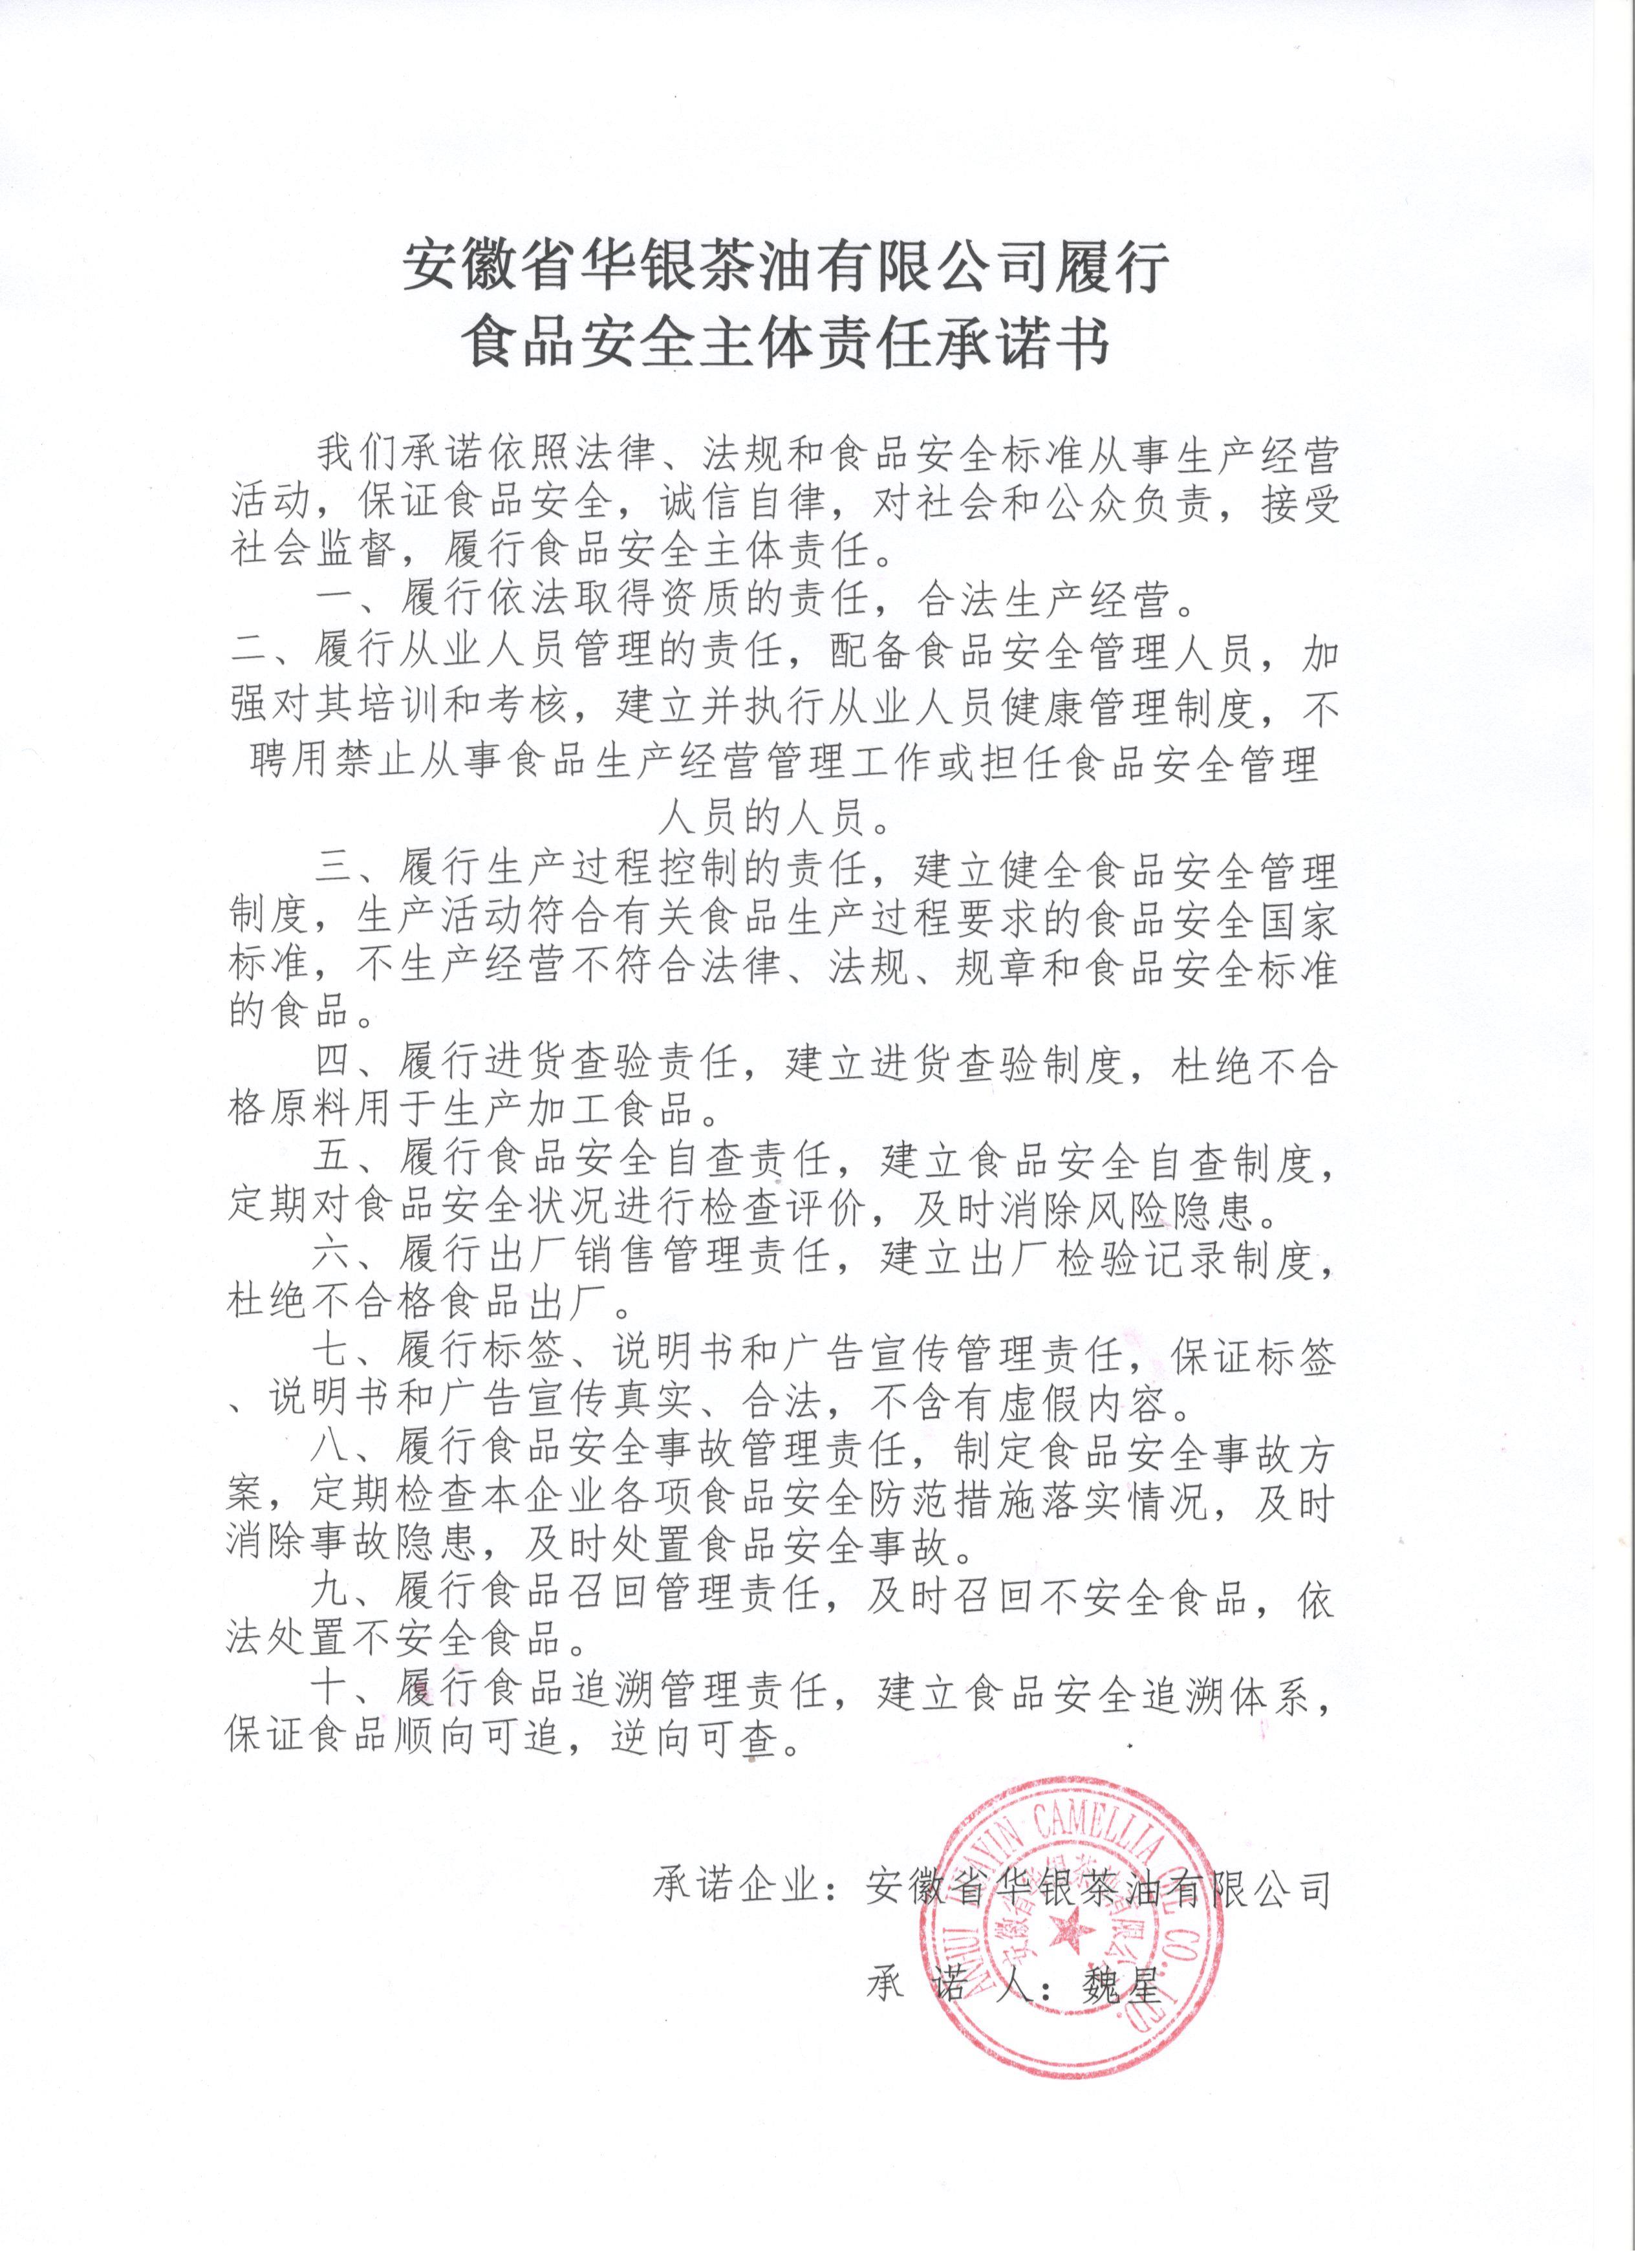 安徽省華銀茶油有限公司履行食品安全主體責任承諾書(圖1)